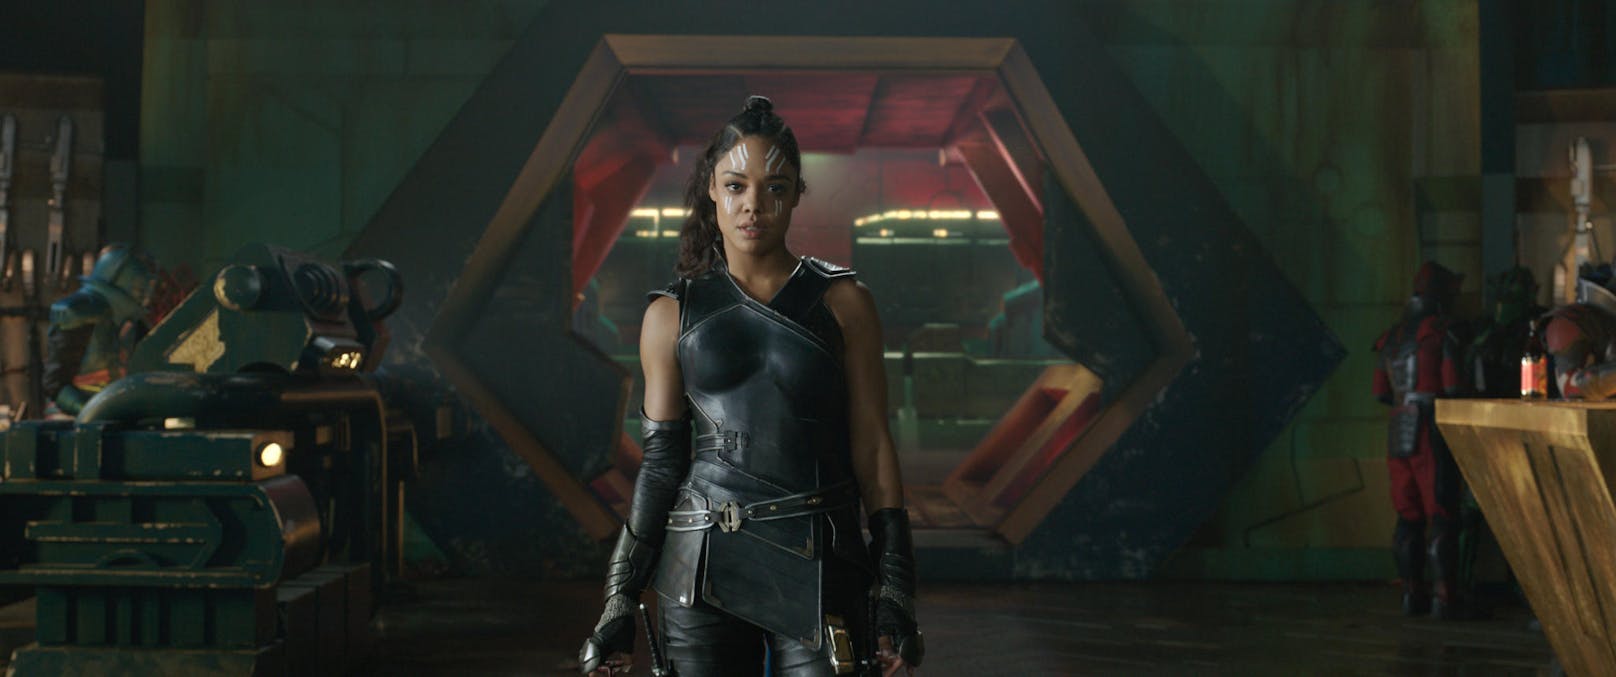 Tessa Thompson als Valkyrie in "Thor: Ragnarok"